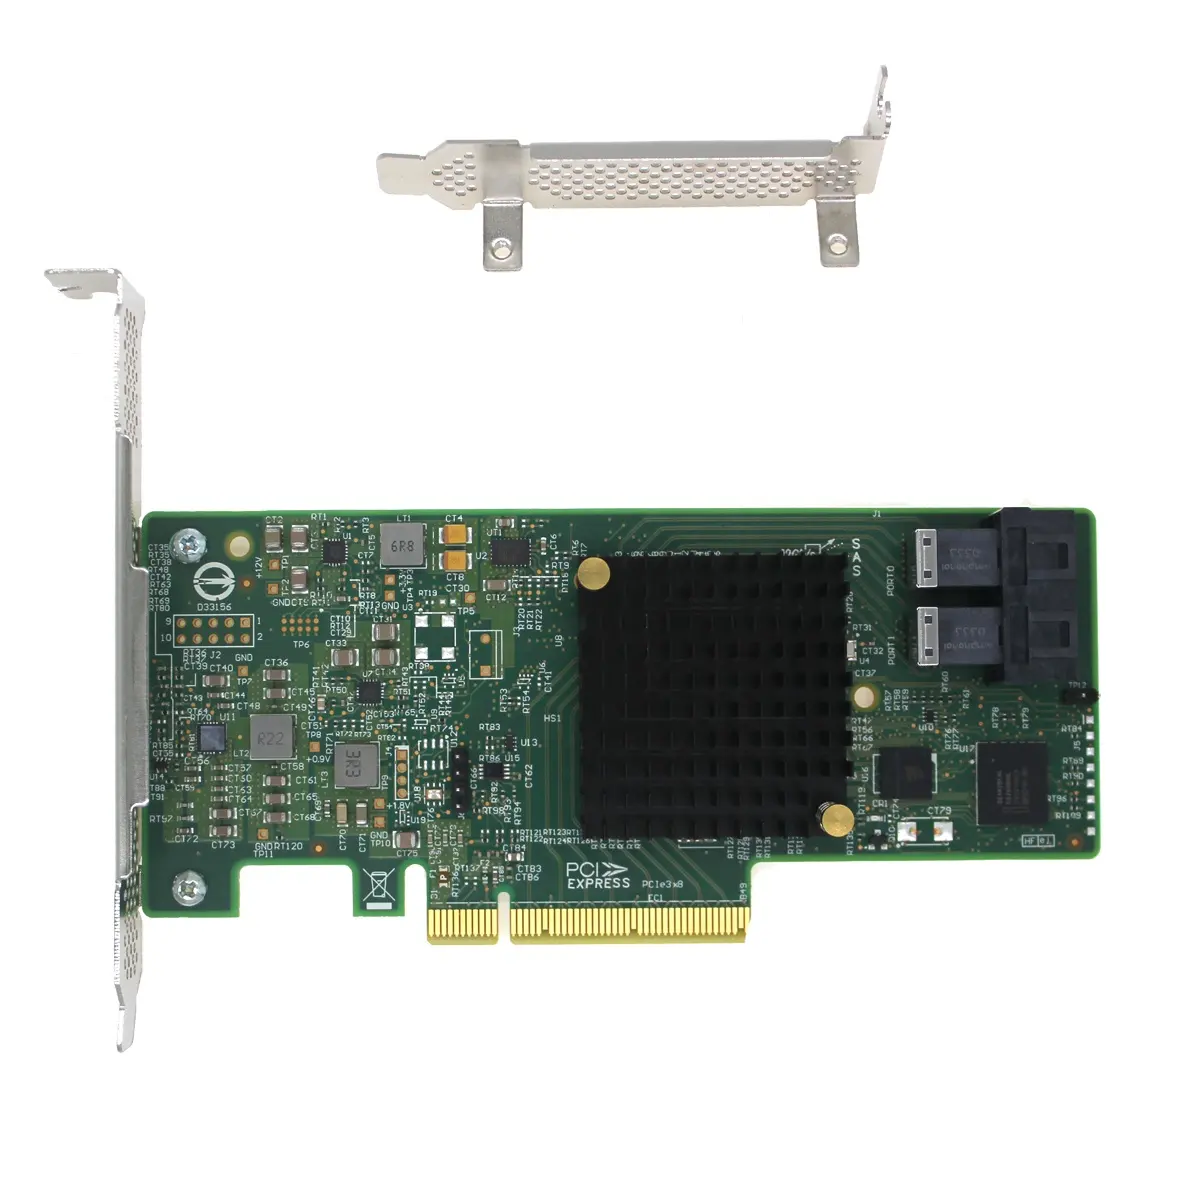 OEM LSI 9300-8i 4 Port 12Gbp/s PCI Express x8 to SAS External Expansion Card HBA card